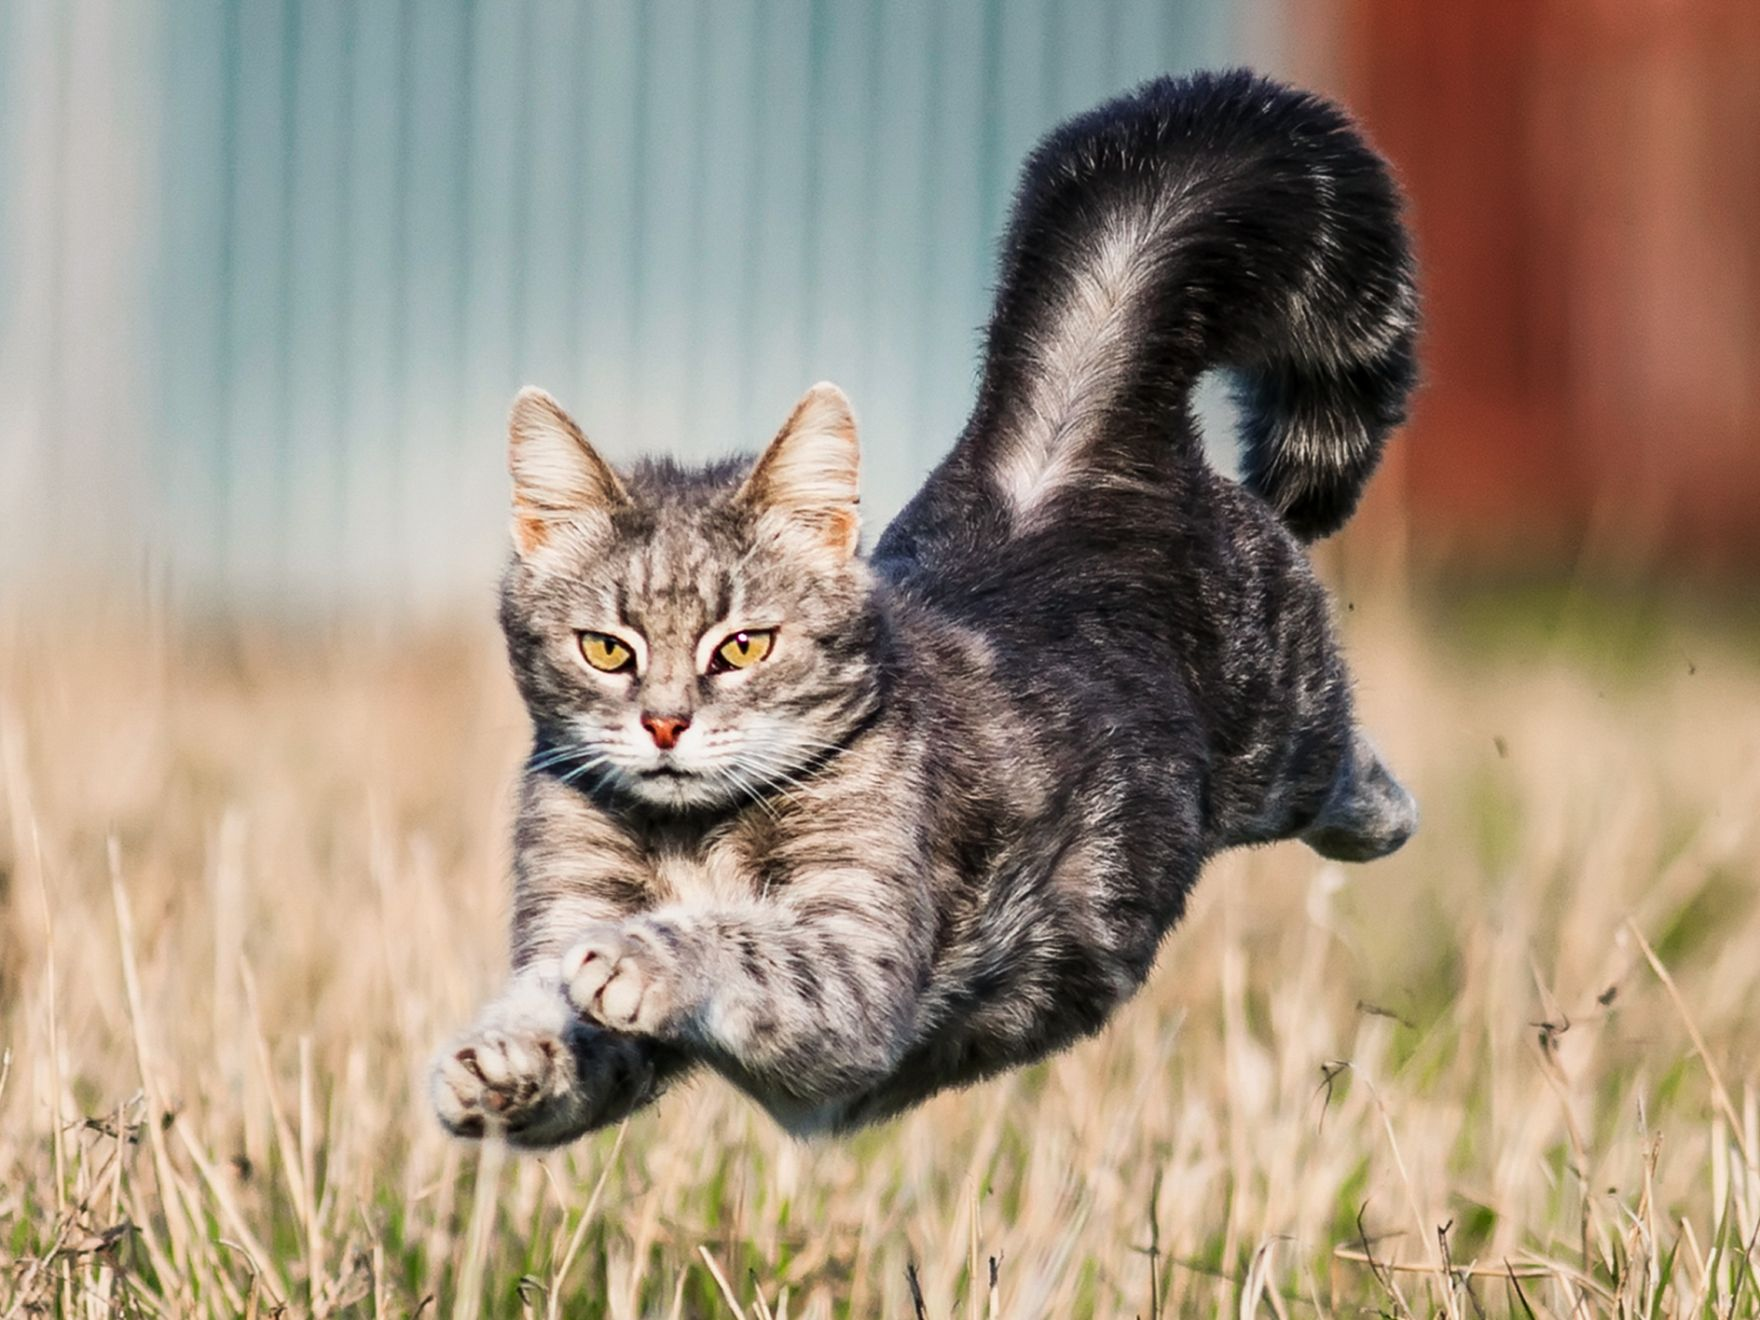 Grey cat running outdoors in a garden